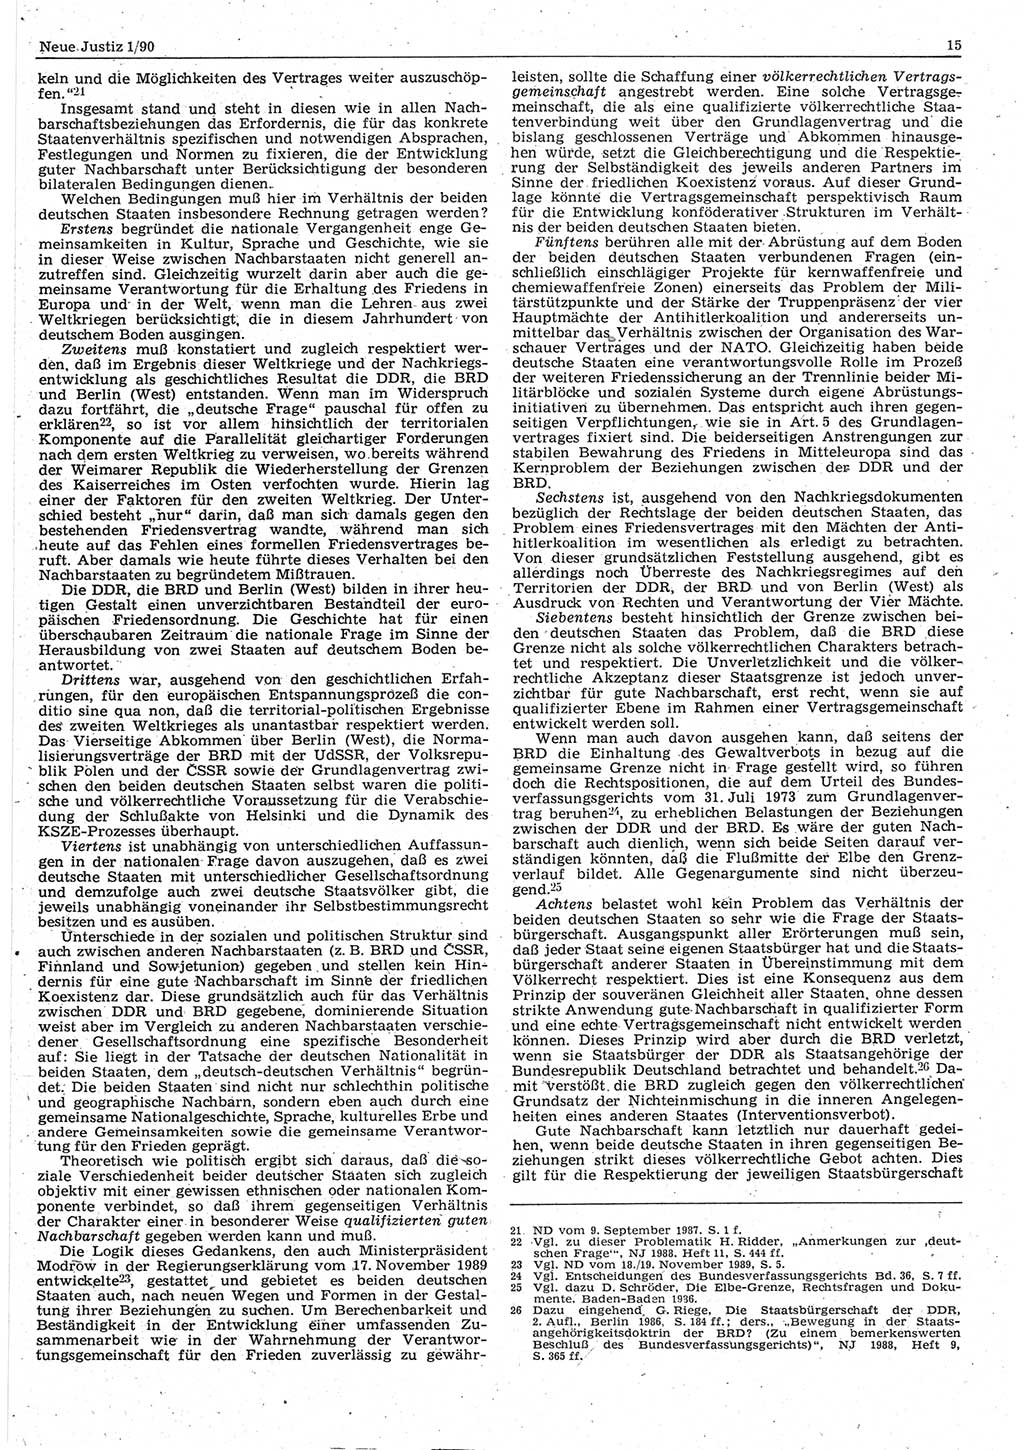 Neue Justiz (NJ), Zeitschrift für Rechtsetzung und Rechtsanwendung [Deutsche Demokratische Republik (DDR)], 44. Jahrgang 1990, Seite 15 (NJ DDR 1990, S. 15)